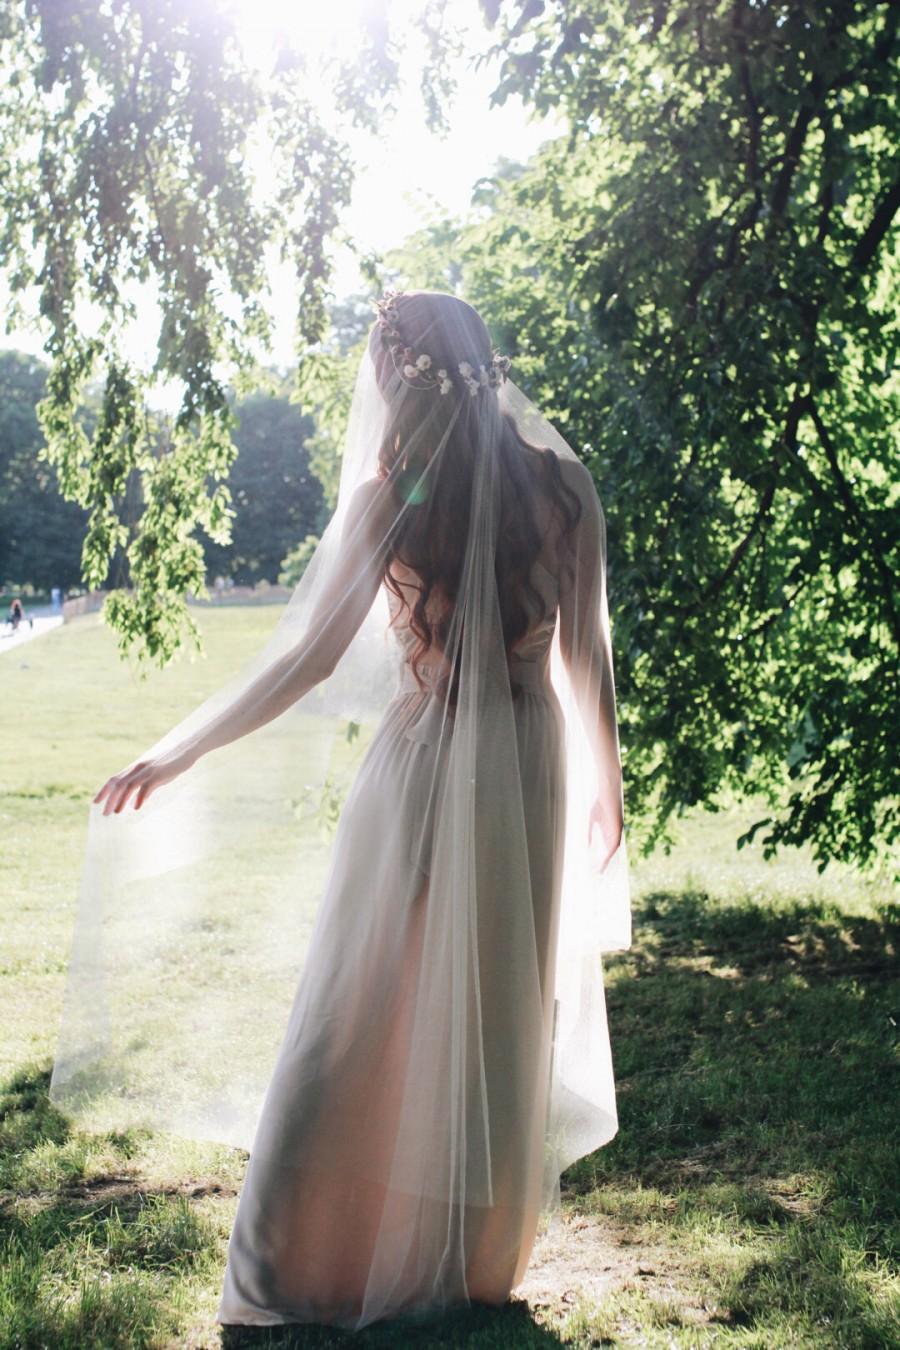 زفاف - Wedding veil, drop veil, soft vintage tulle, white bridal veil, circle fingertip veil, waltz length, whimsical wedding accessories